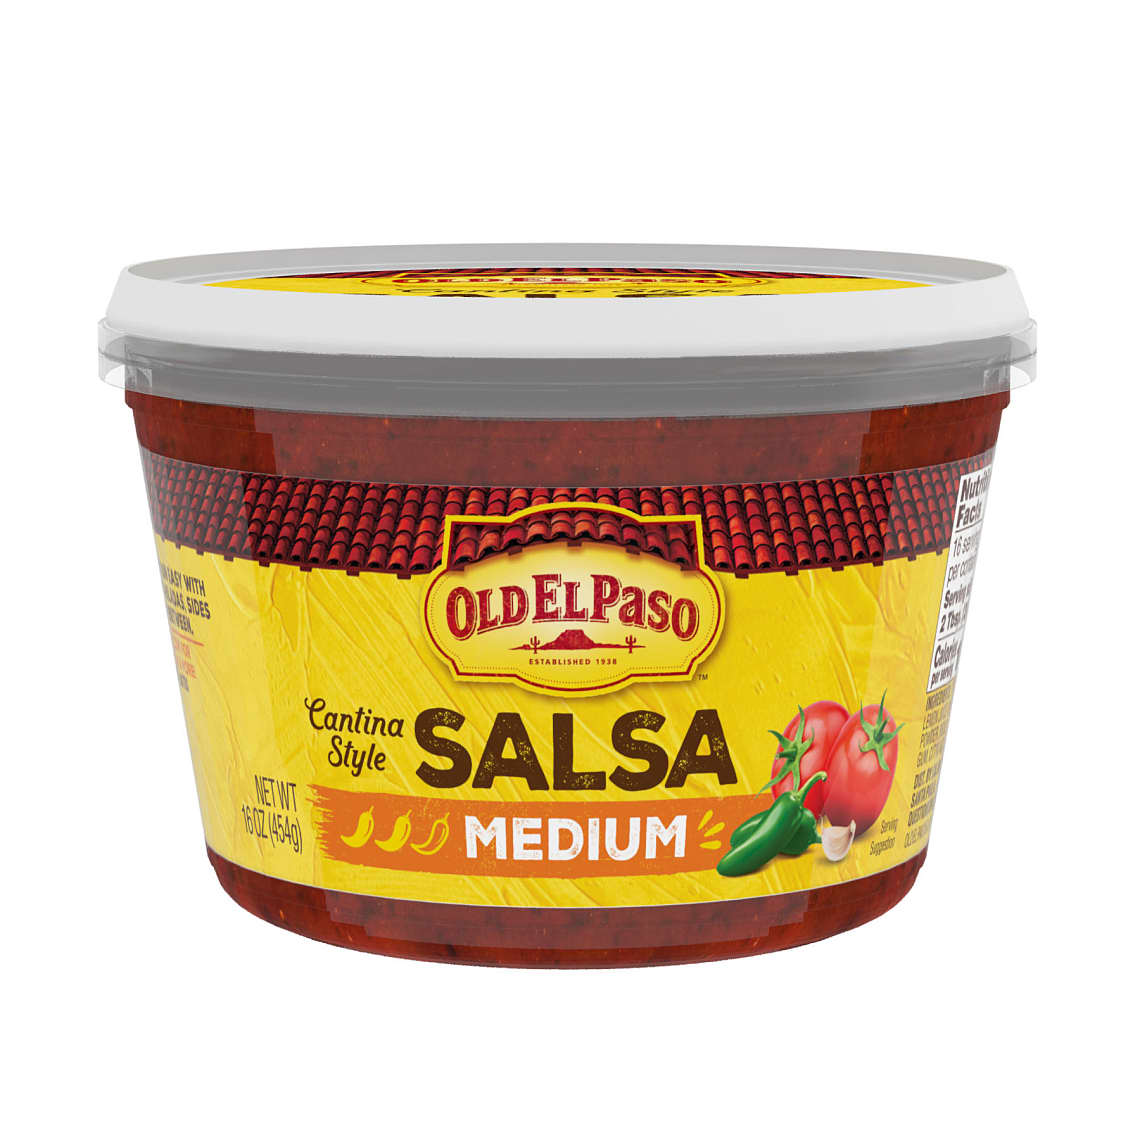 Old El Paso Medium Salsa